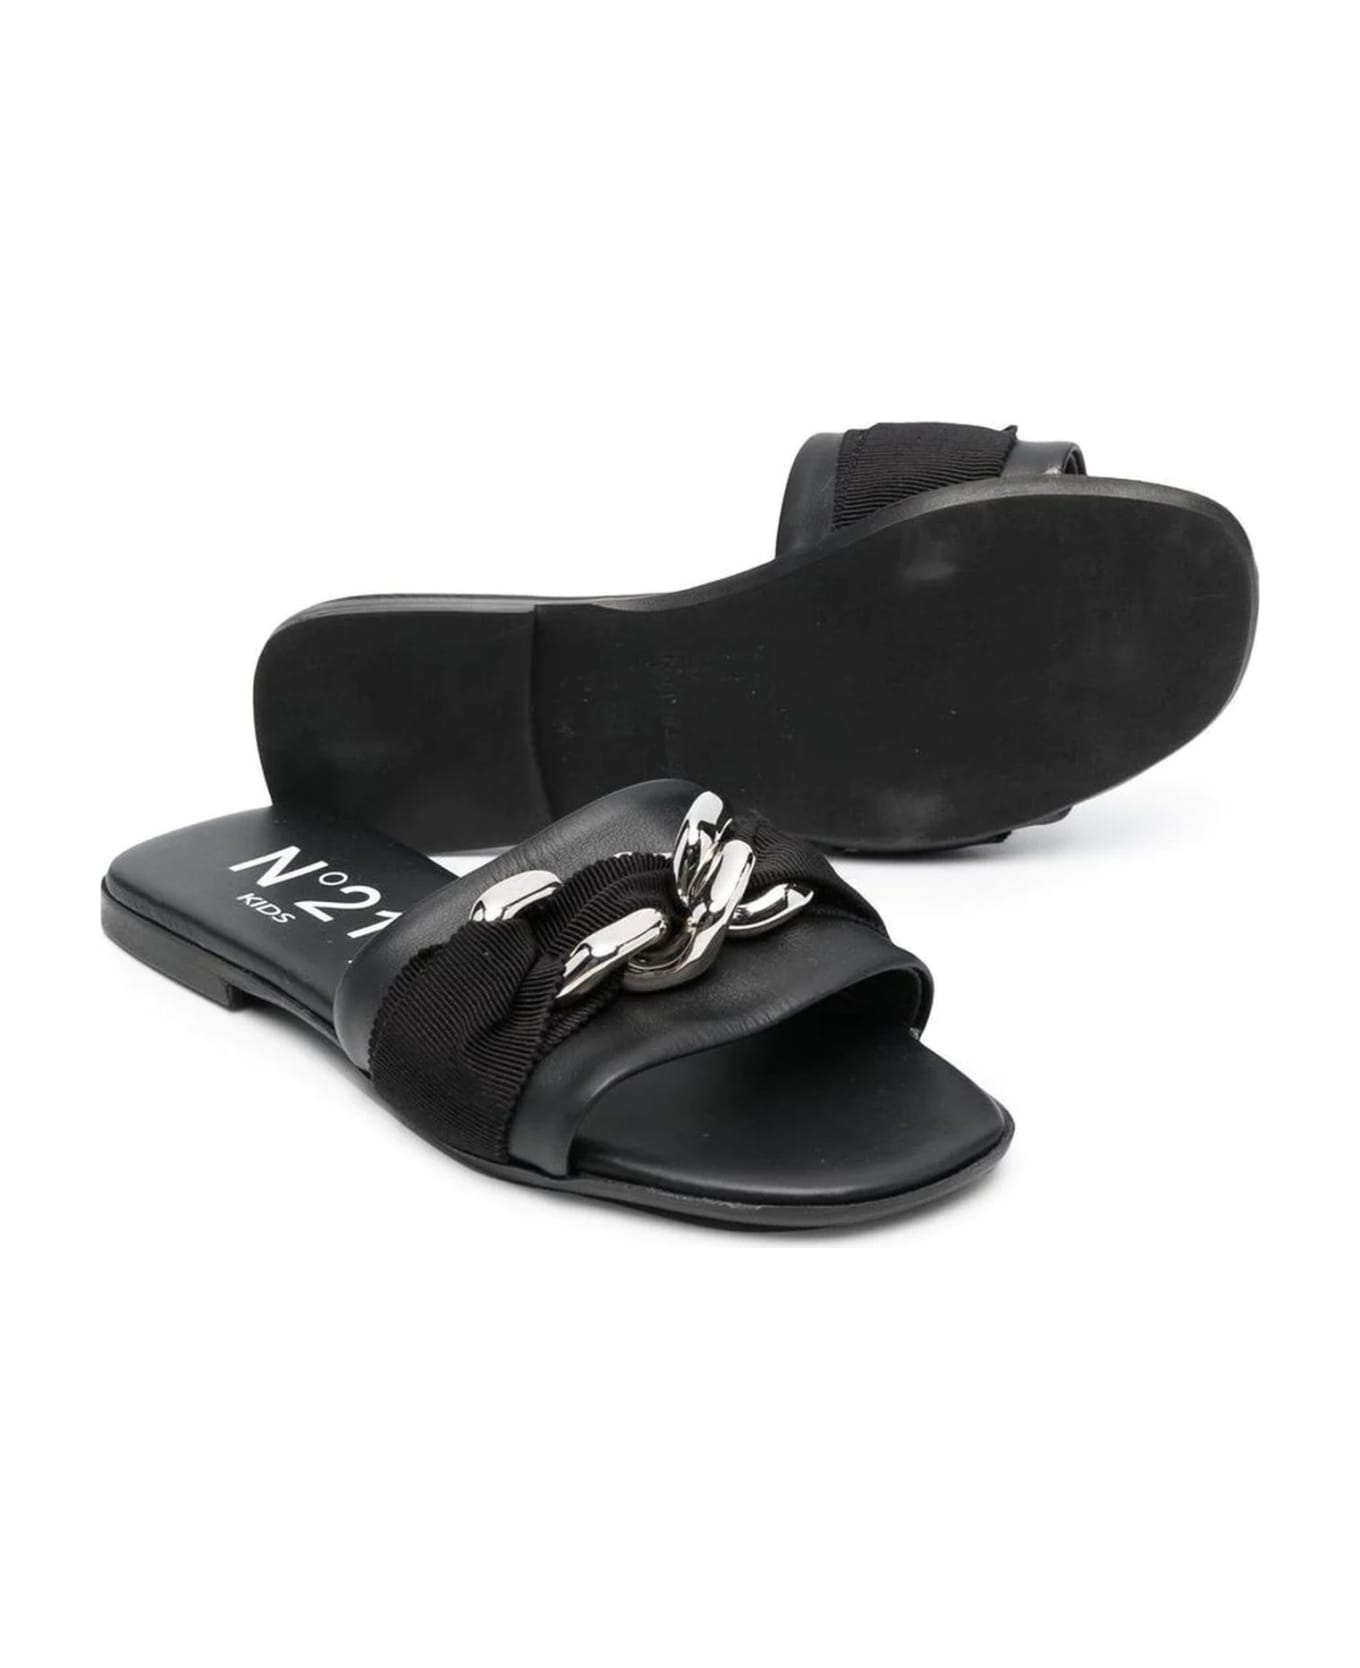 N.21 N°21 Sandals Black - Black